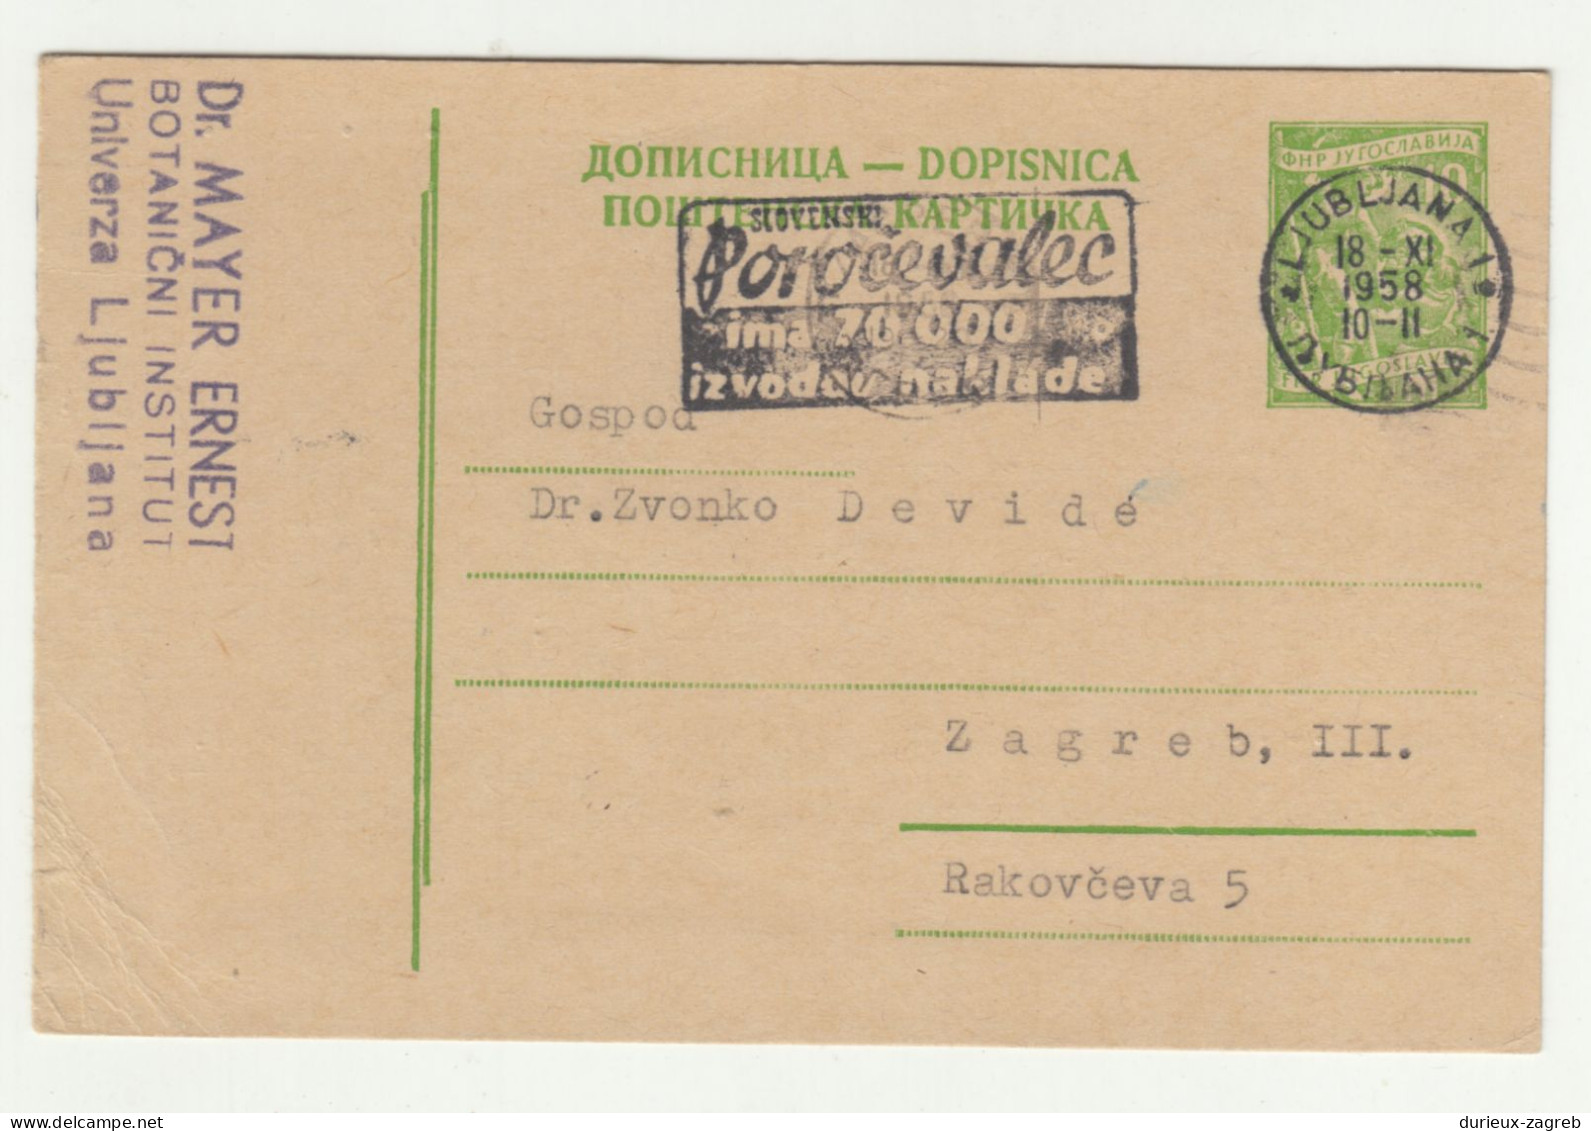 Poročevalec Slogan Postmark On Postal Stationery Postcard Posted 1958 Ljubljana B240503 - Slovenia